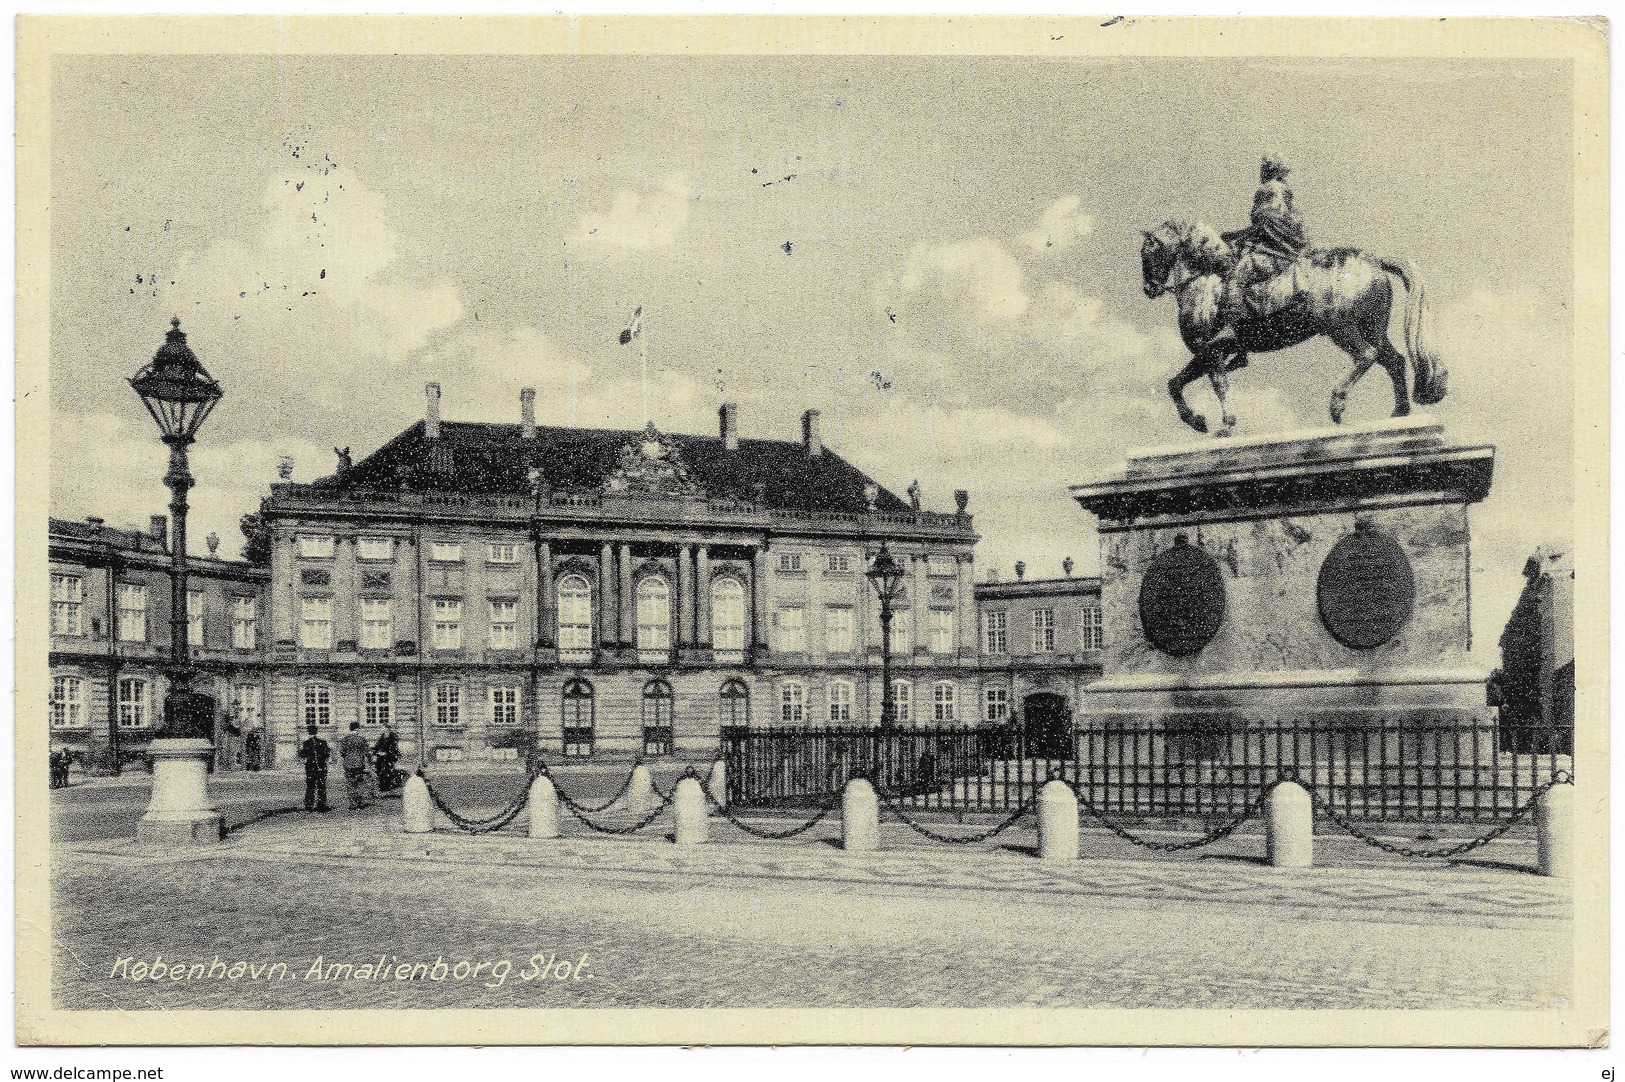 København Amalienborg Slot- 1946 - Rudolf Olsen - Denmark